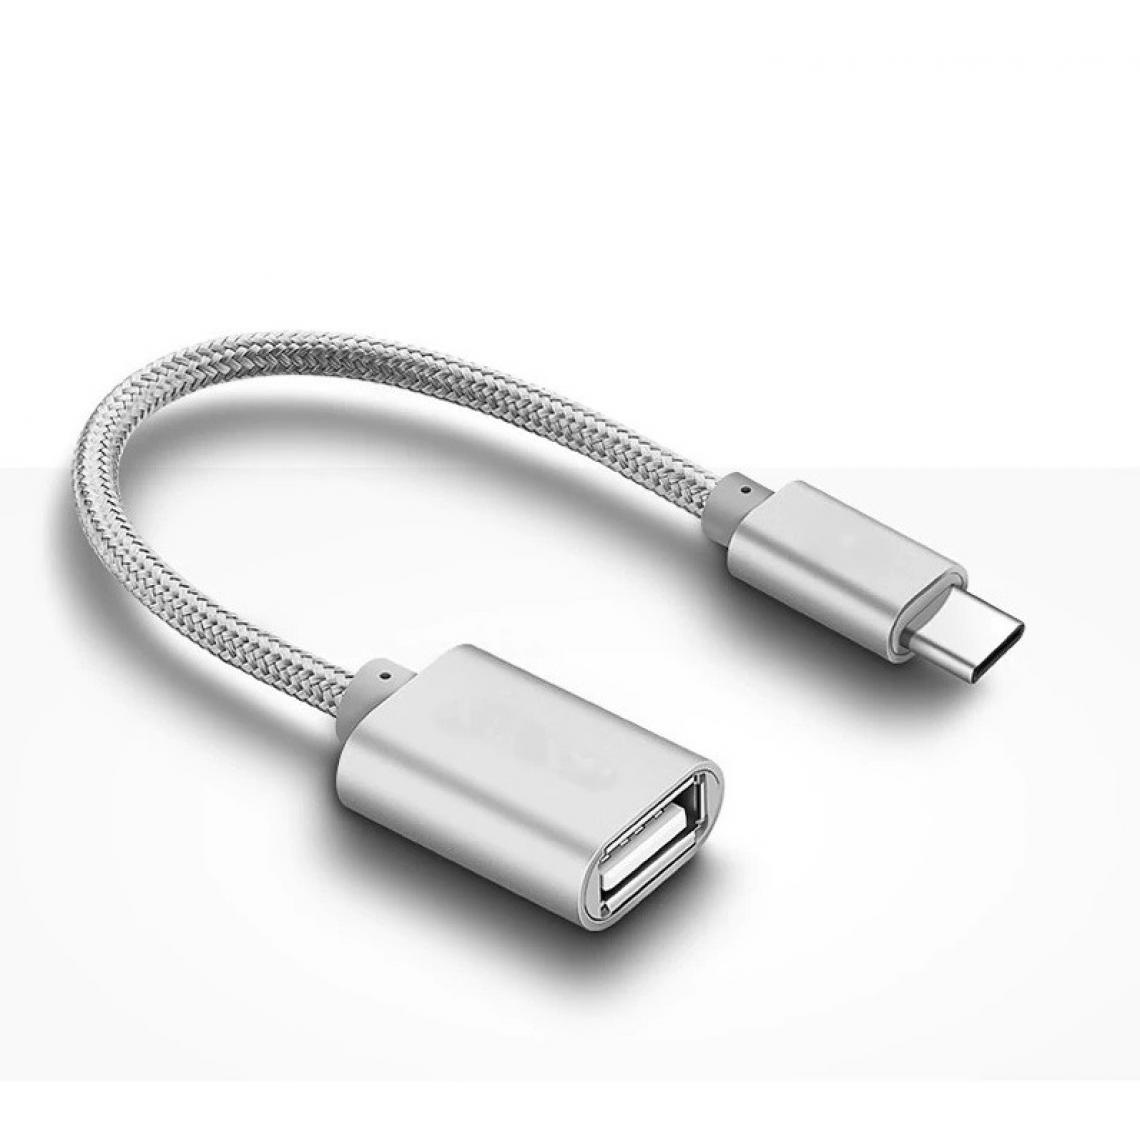 Shot - Adaptateur Type C/USB pour HUAWEI Mate 20 Smartphone & MAC USB-C Clef (ARGENT) - Autres accessoires smartphone